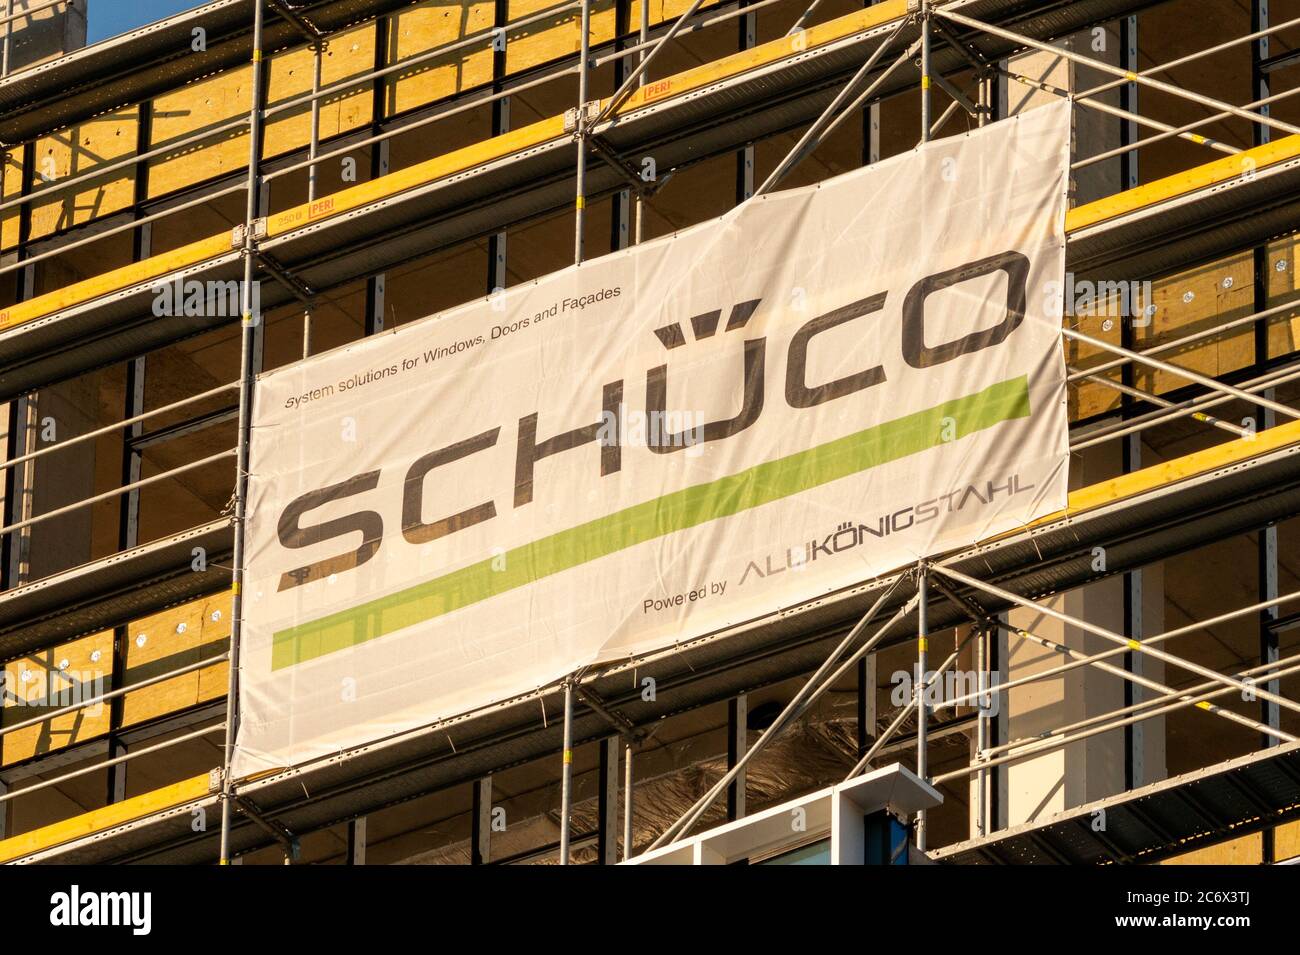 Schuco advertisement banner on construction site facade. Stock Photo